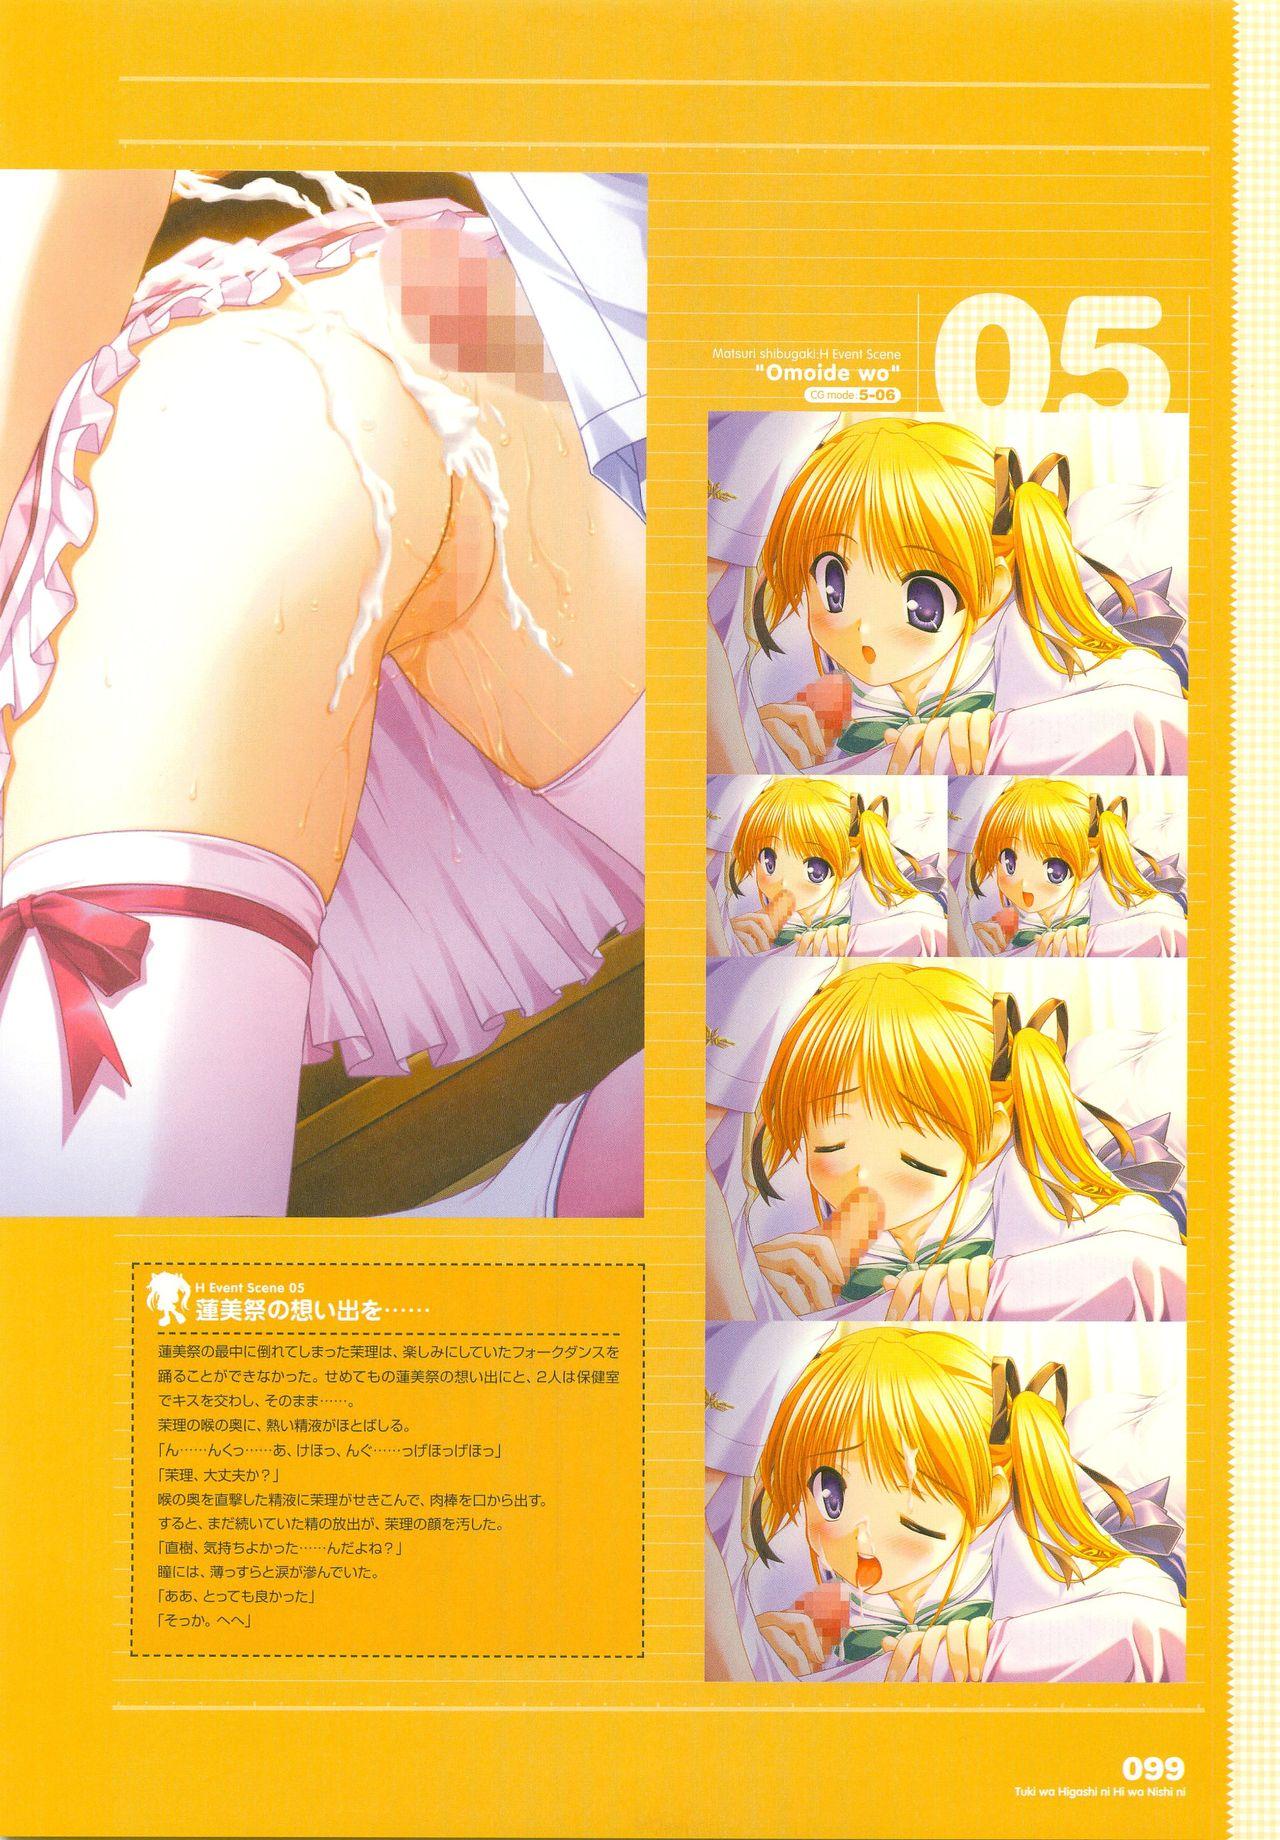 Tsuki wa Higashi ni Hi wa Nishi ni - Operation Sanctuary - Visual Fan Book Shokai Ban 126